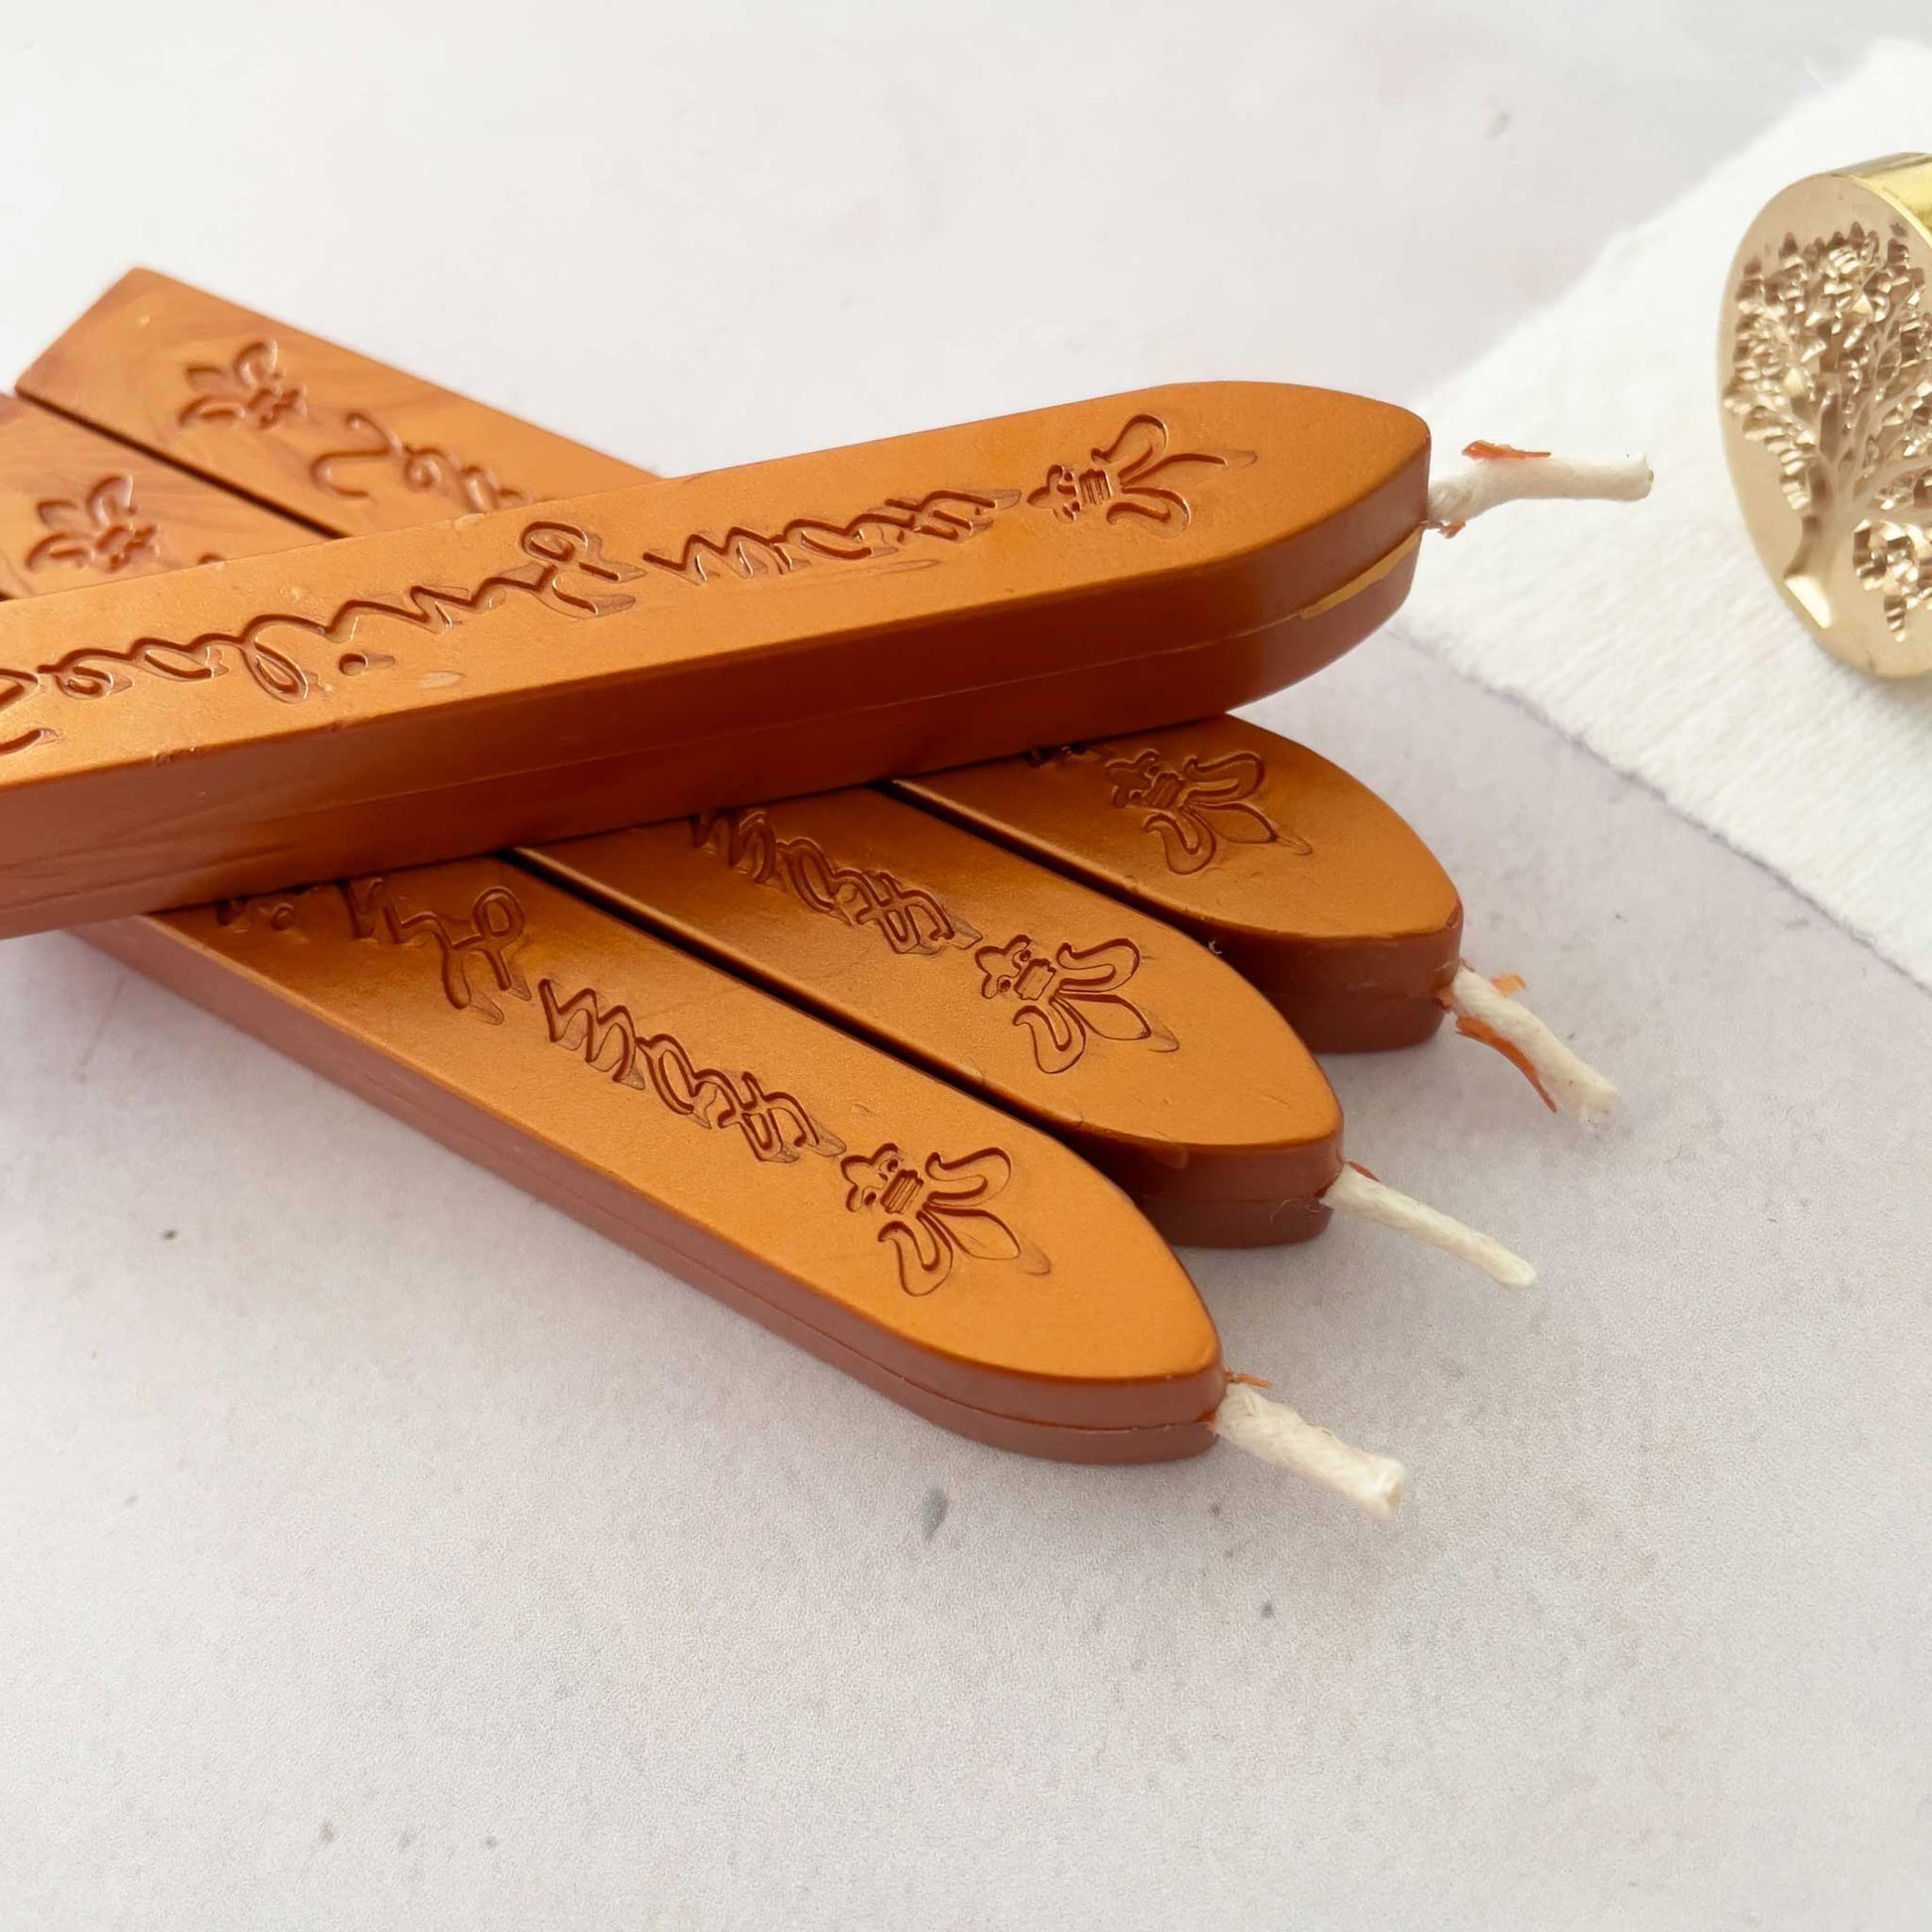 Metallic Copper Sealing Wax Stick with Wick – ArteOfTheBooke